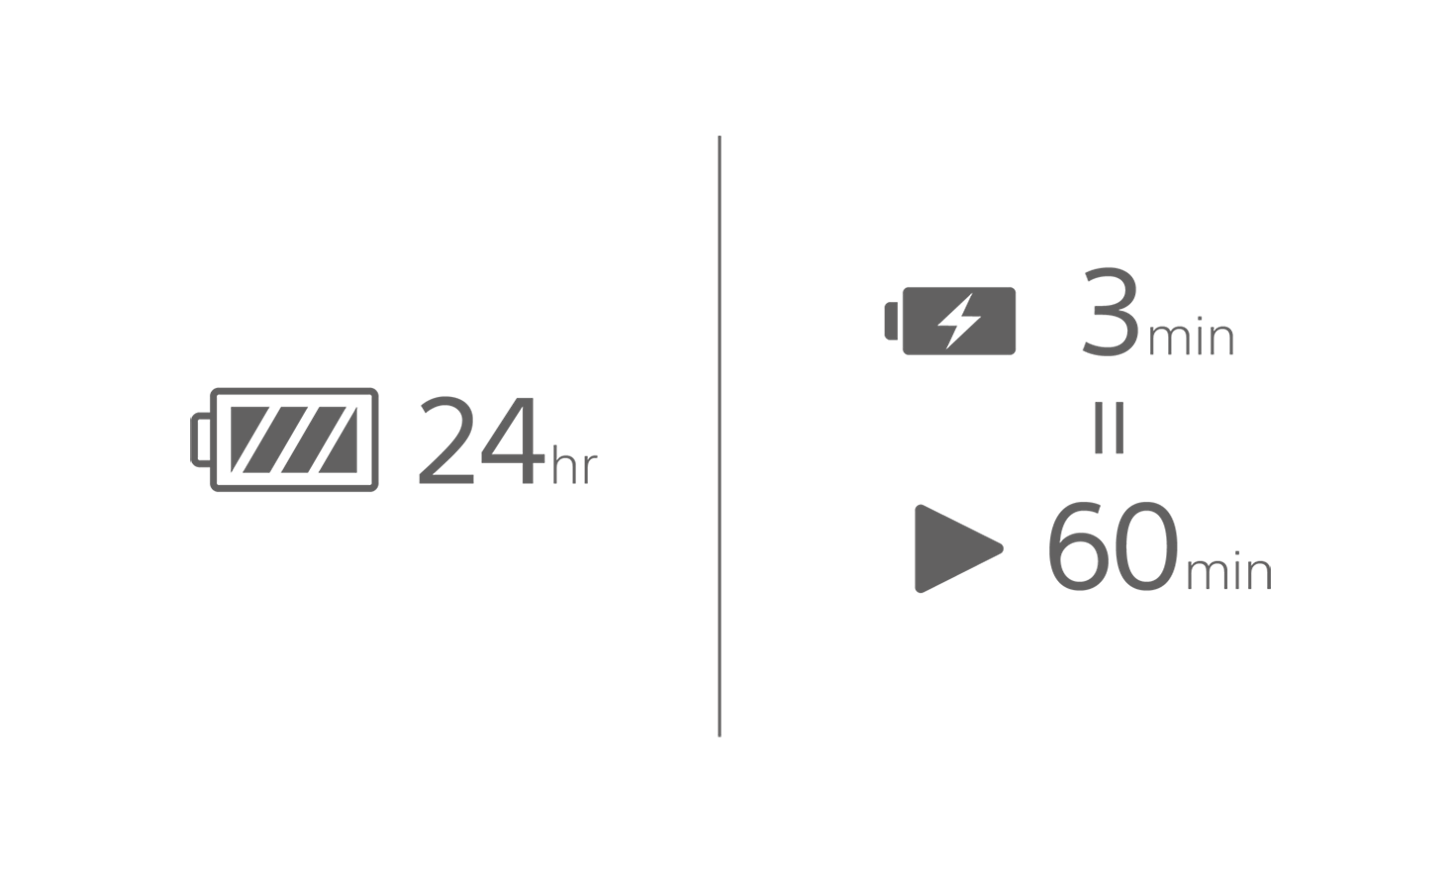 Kuva akkukuvakkeesta ja teksti 24 h, toinen akku ja lataussymboli, sekä toistokuvake ja teksti 60 min, joiden yläpuolella teksti 3 min